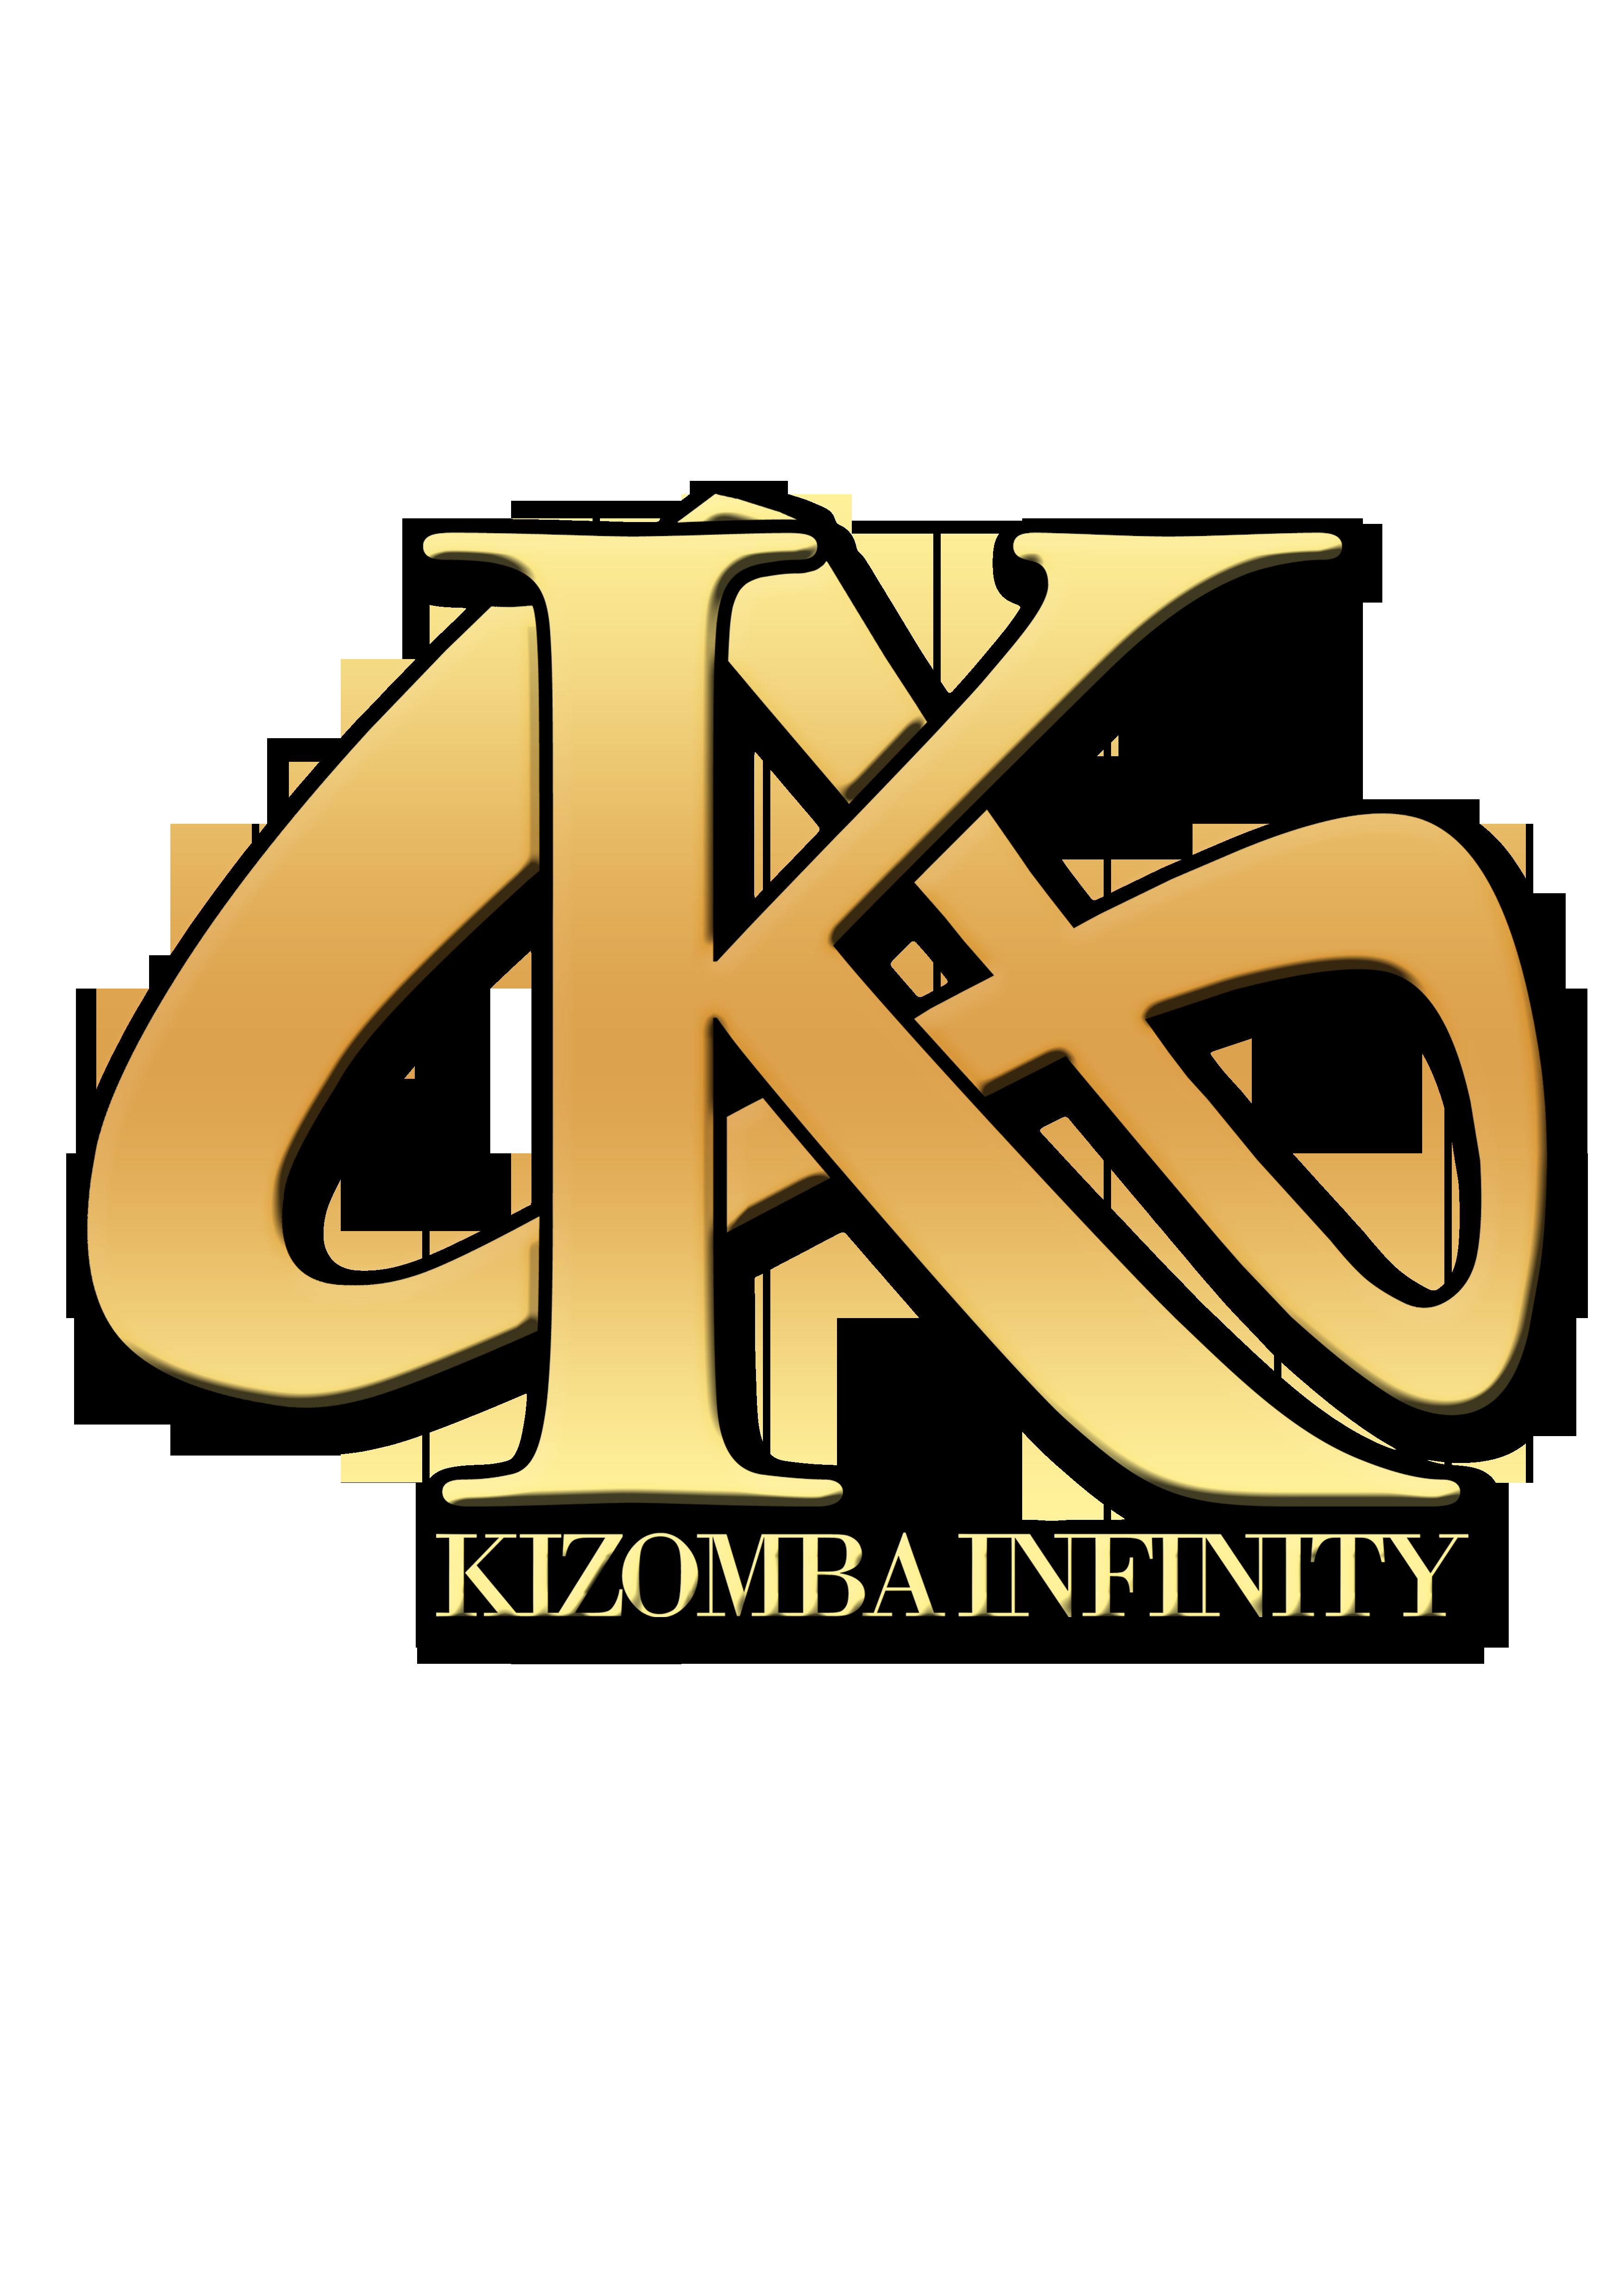 Kizomba Infinity